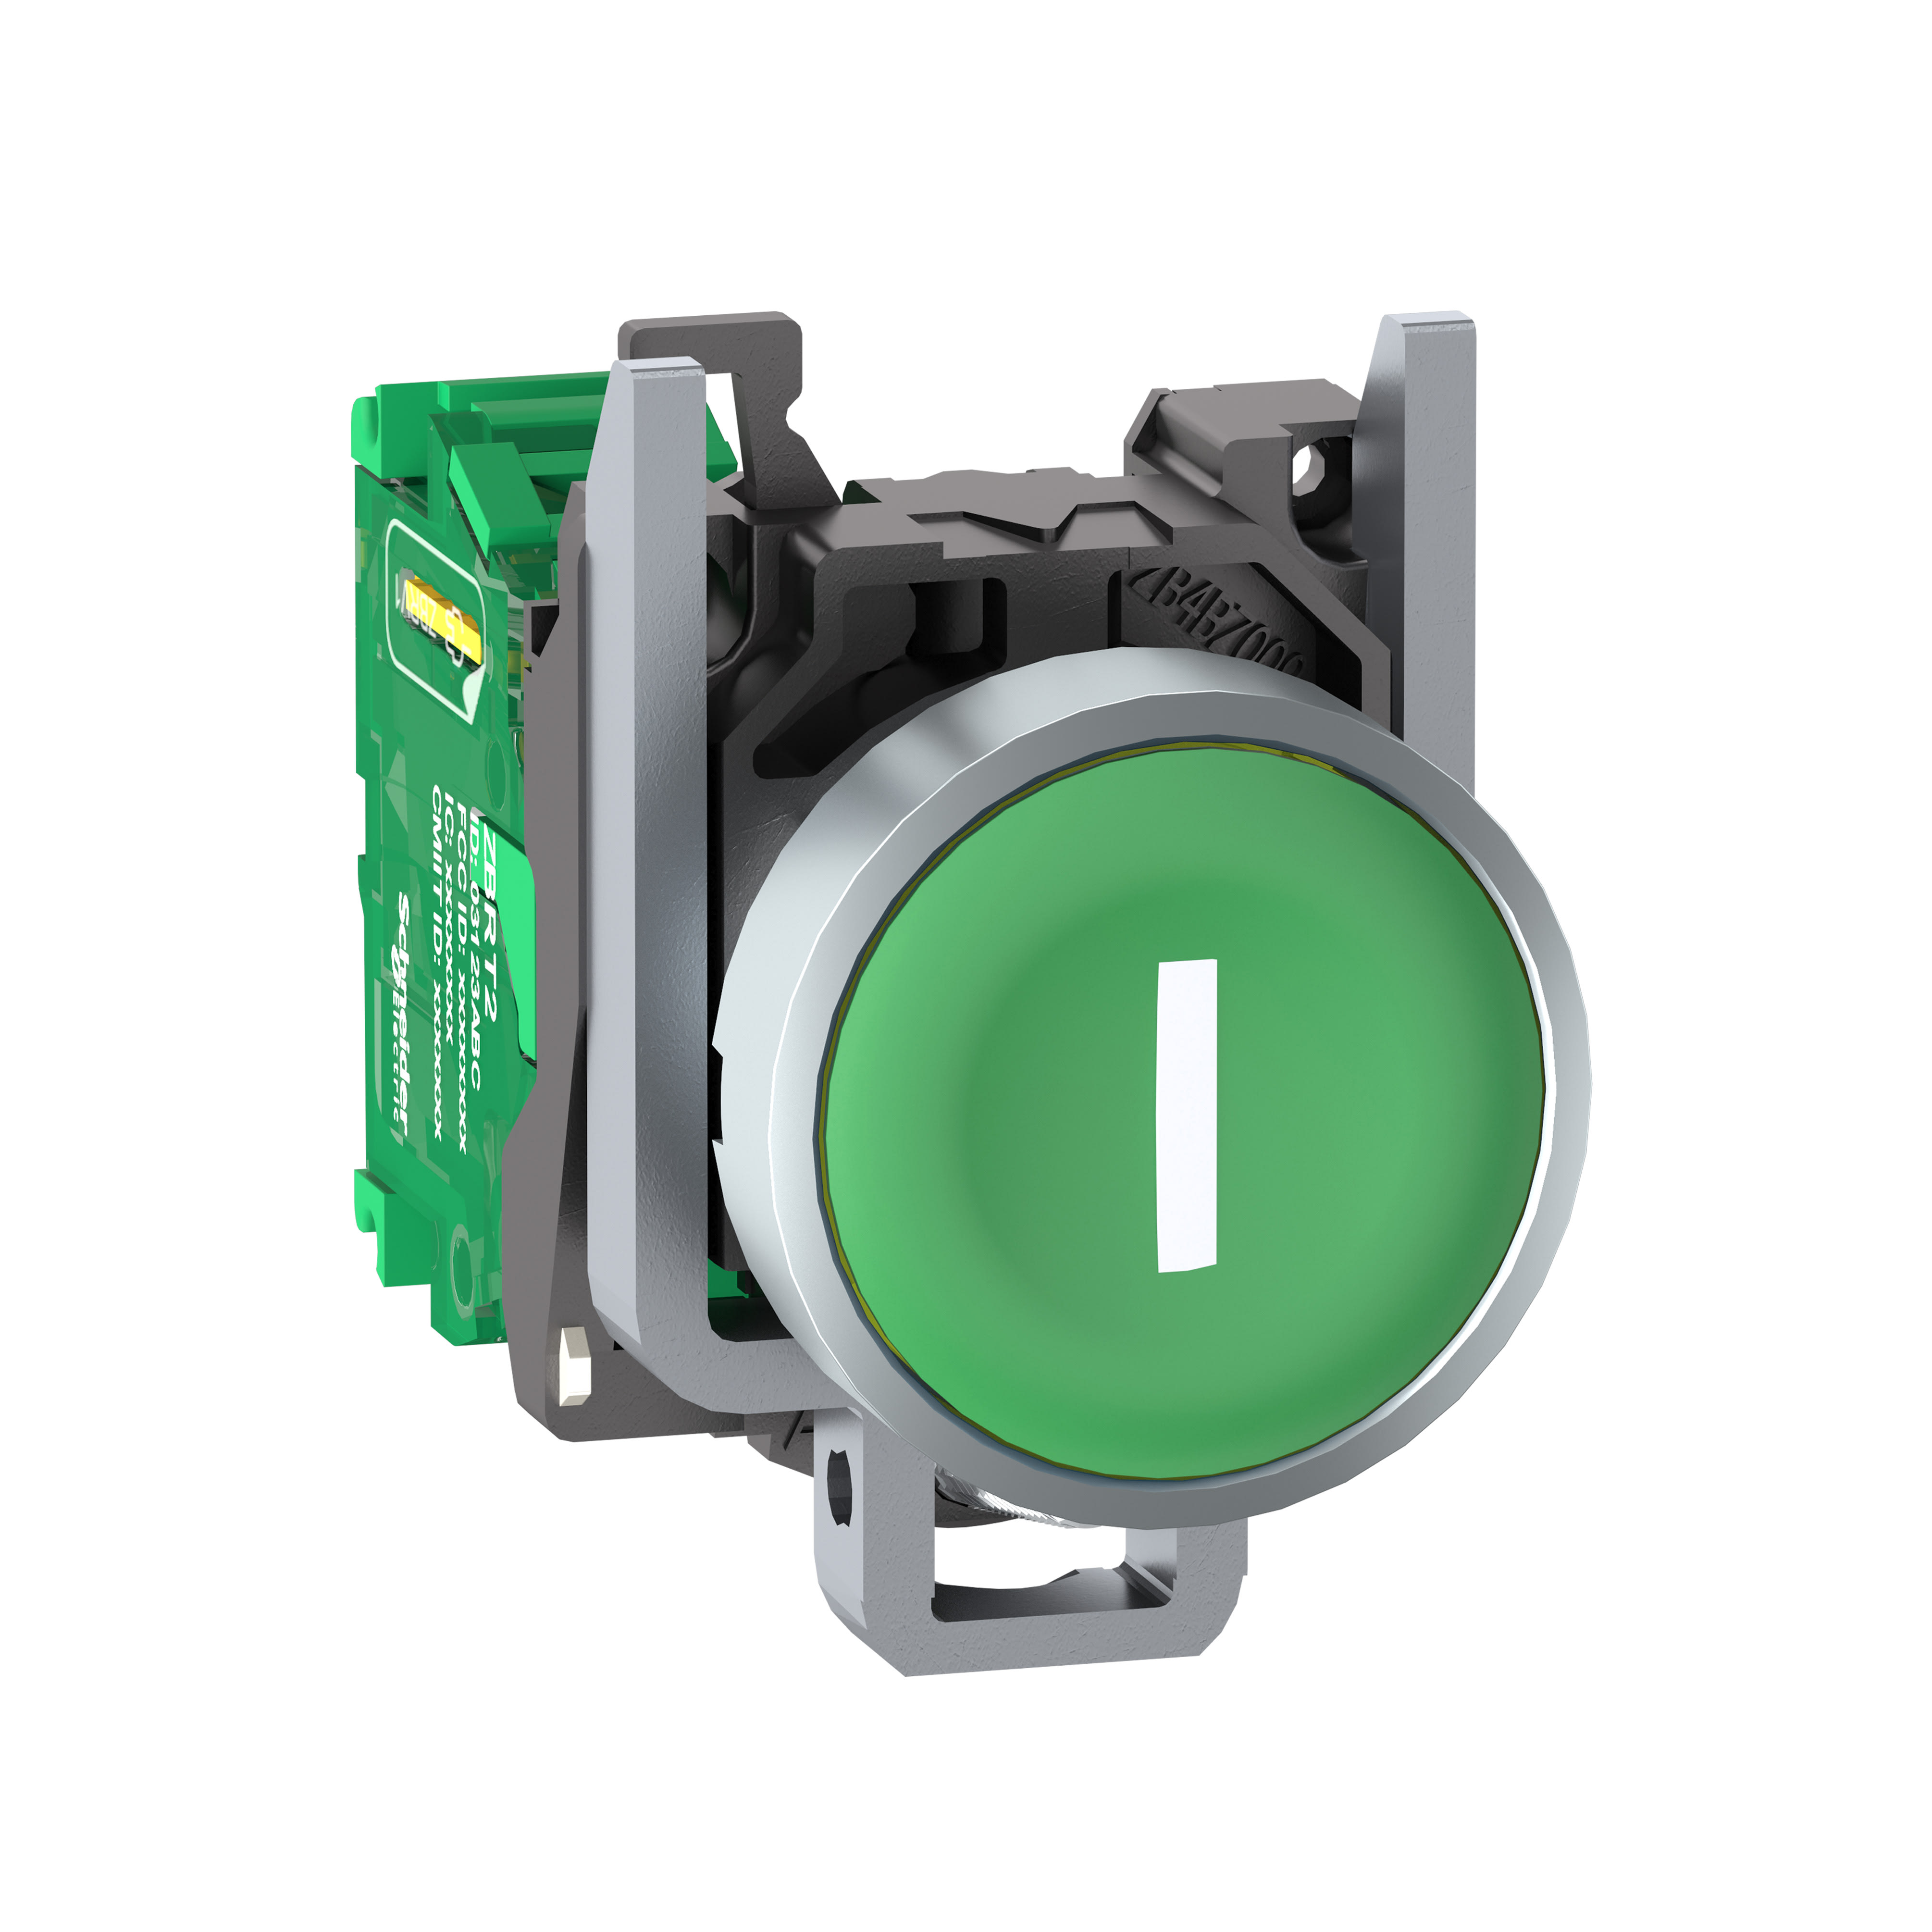 Schneider Electric - Trådløs trykknapp i metall med fjær-retur og plan trykflate i grønn med hvit"I" og sender m 1 signal